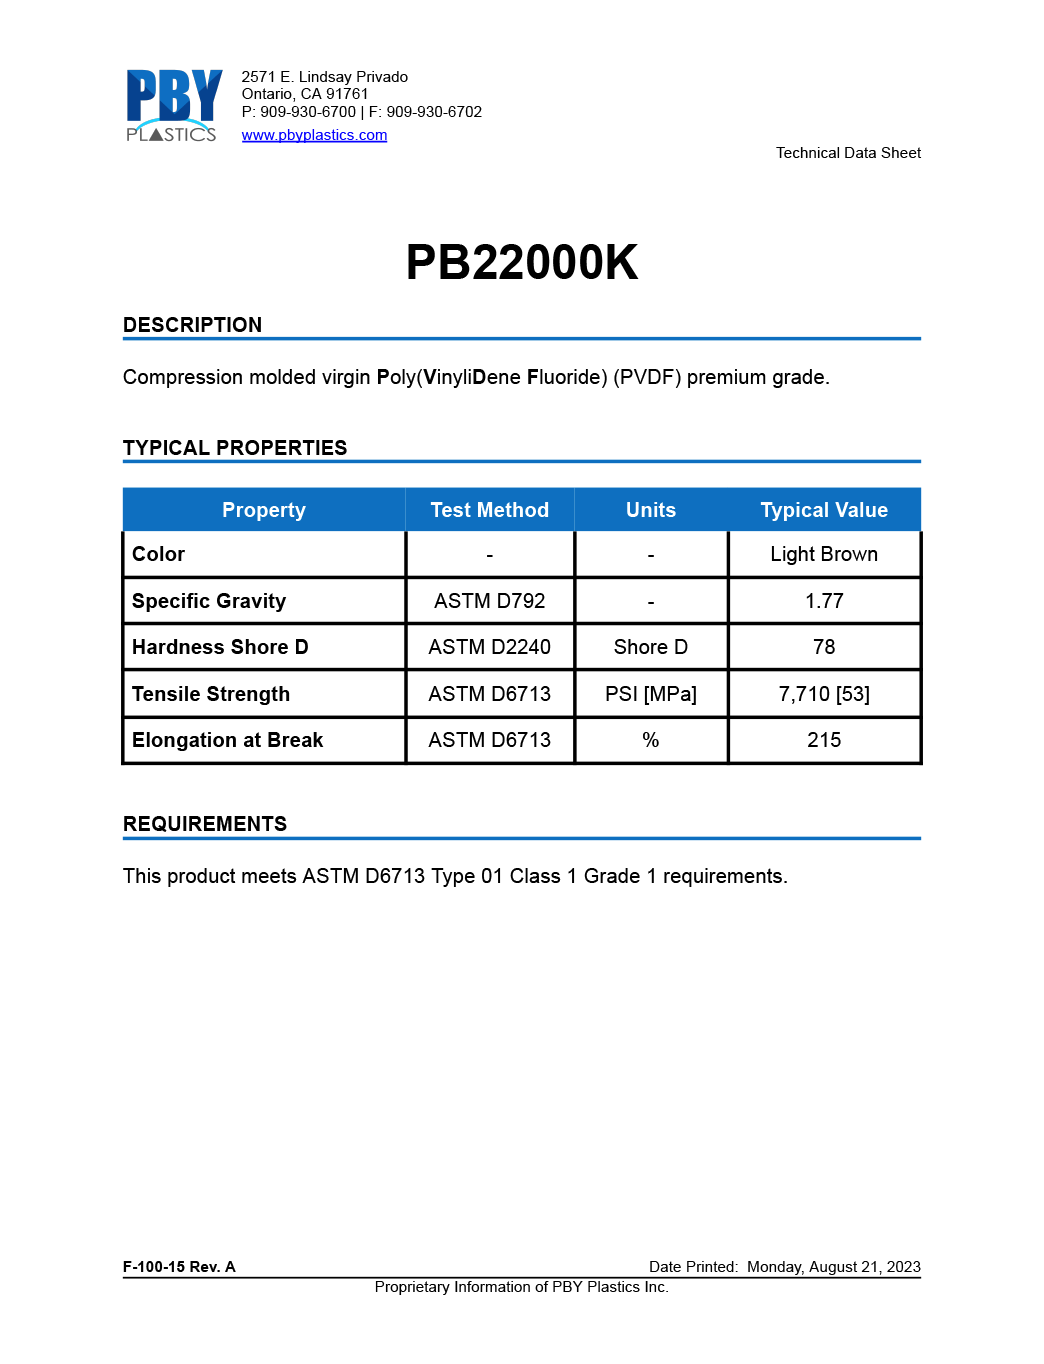 PB22000K-Aug21-Thumbnail